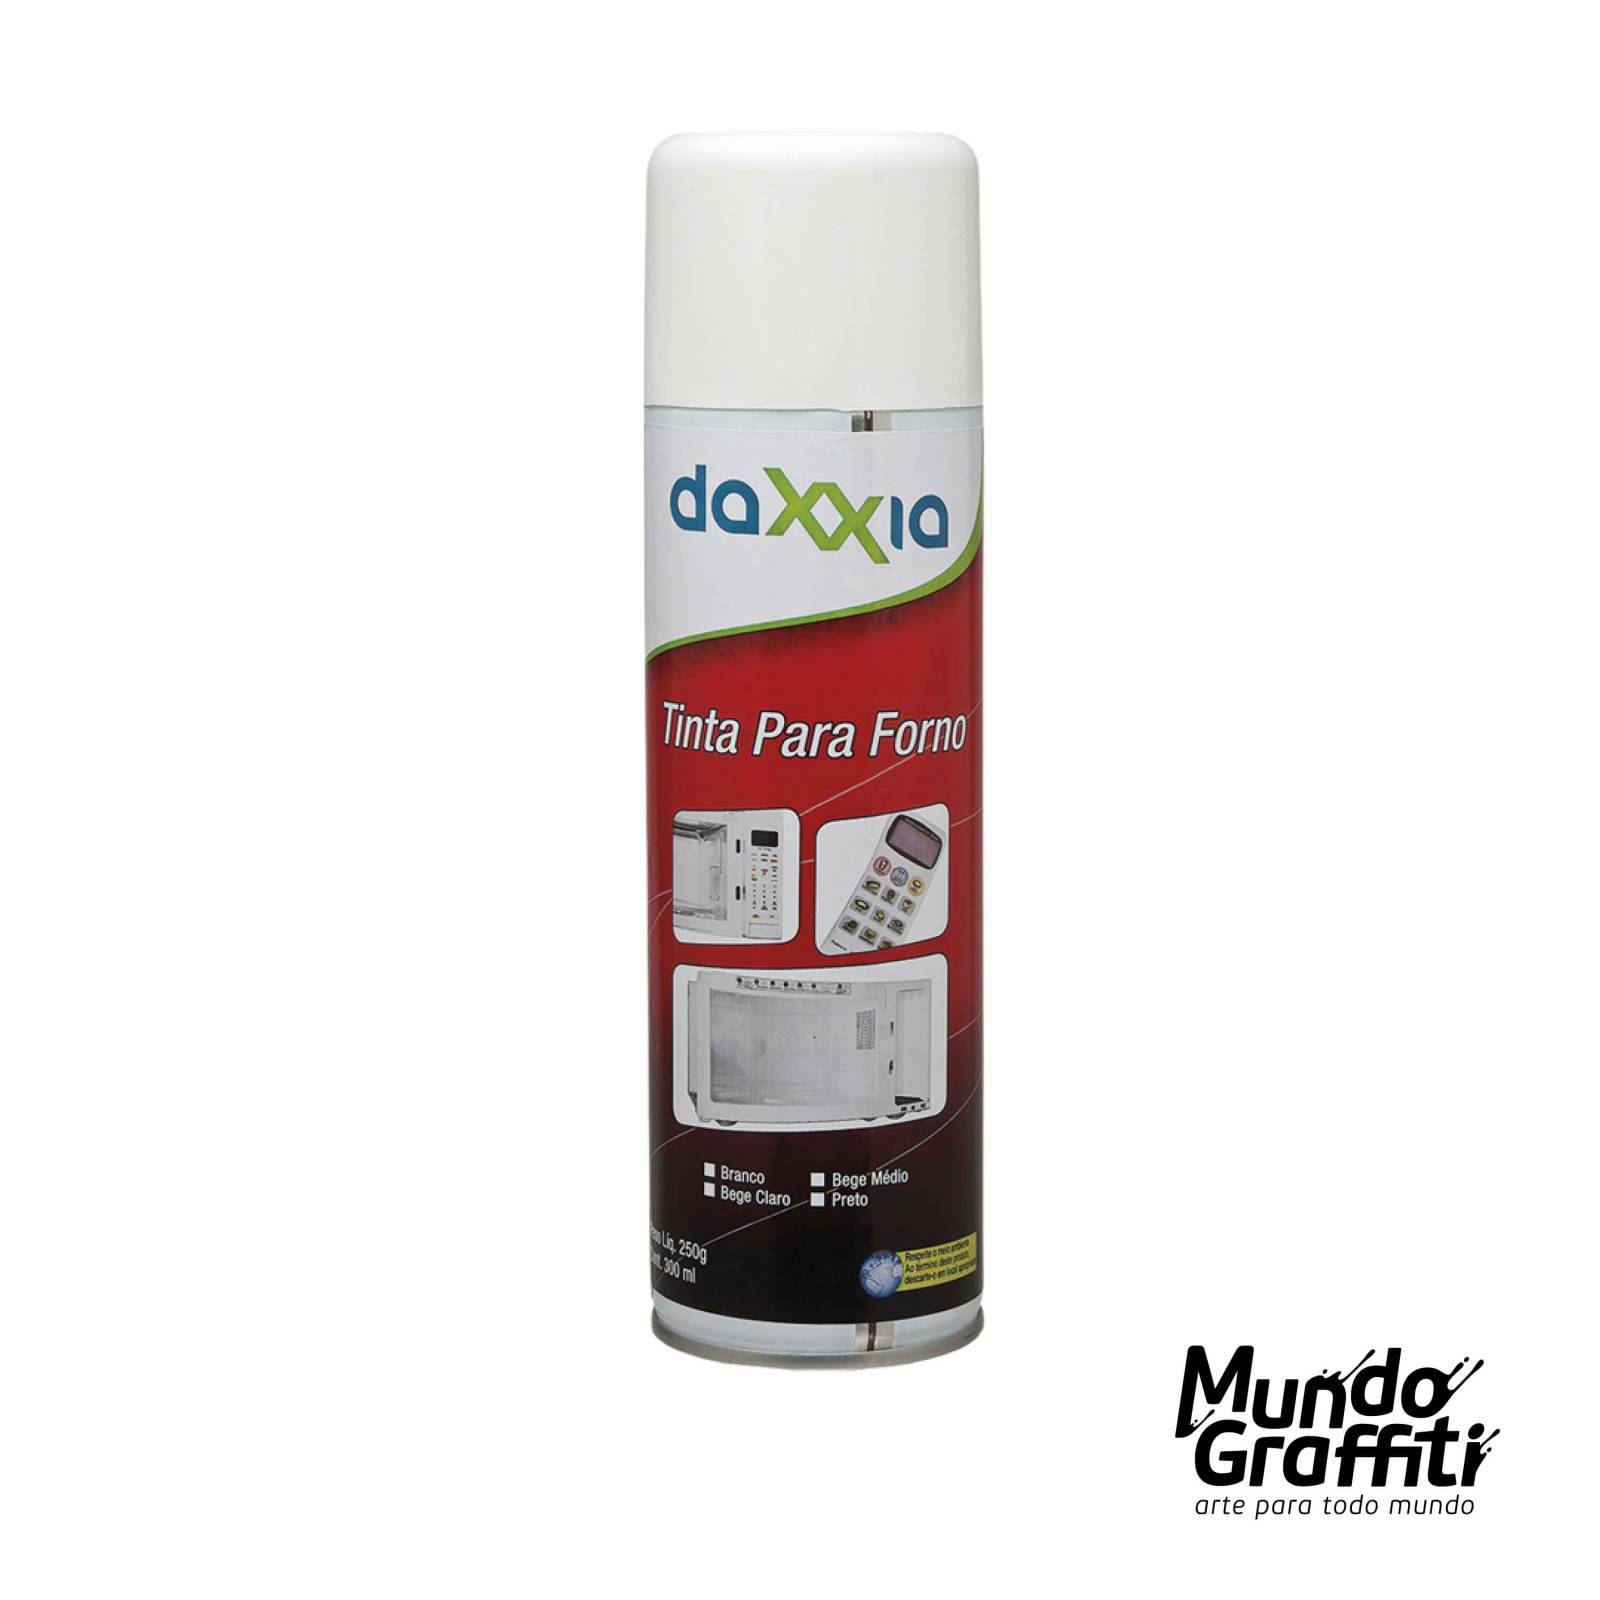 Tinta Spray Daxxia para Microondas 61508 Branco 300ml - Mundo Graffiti